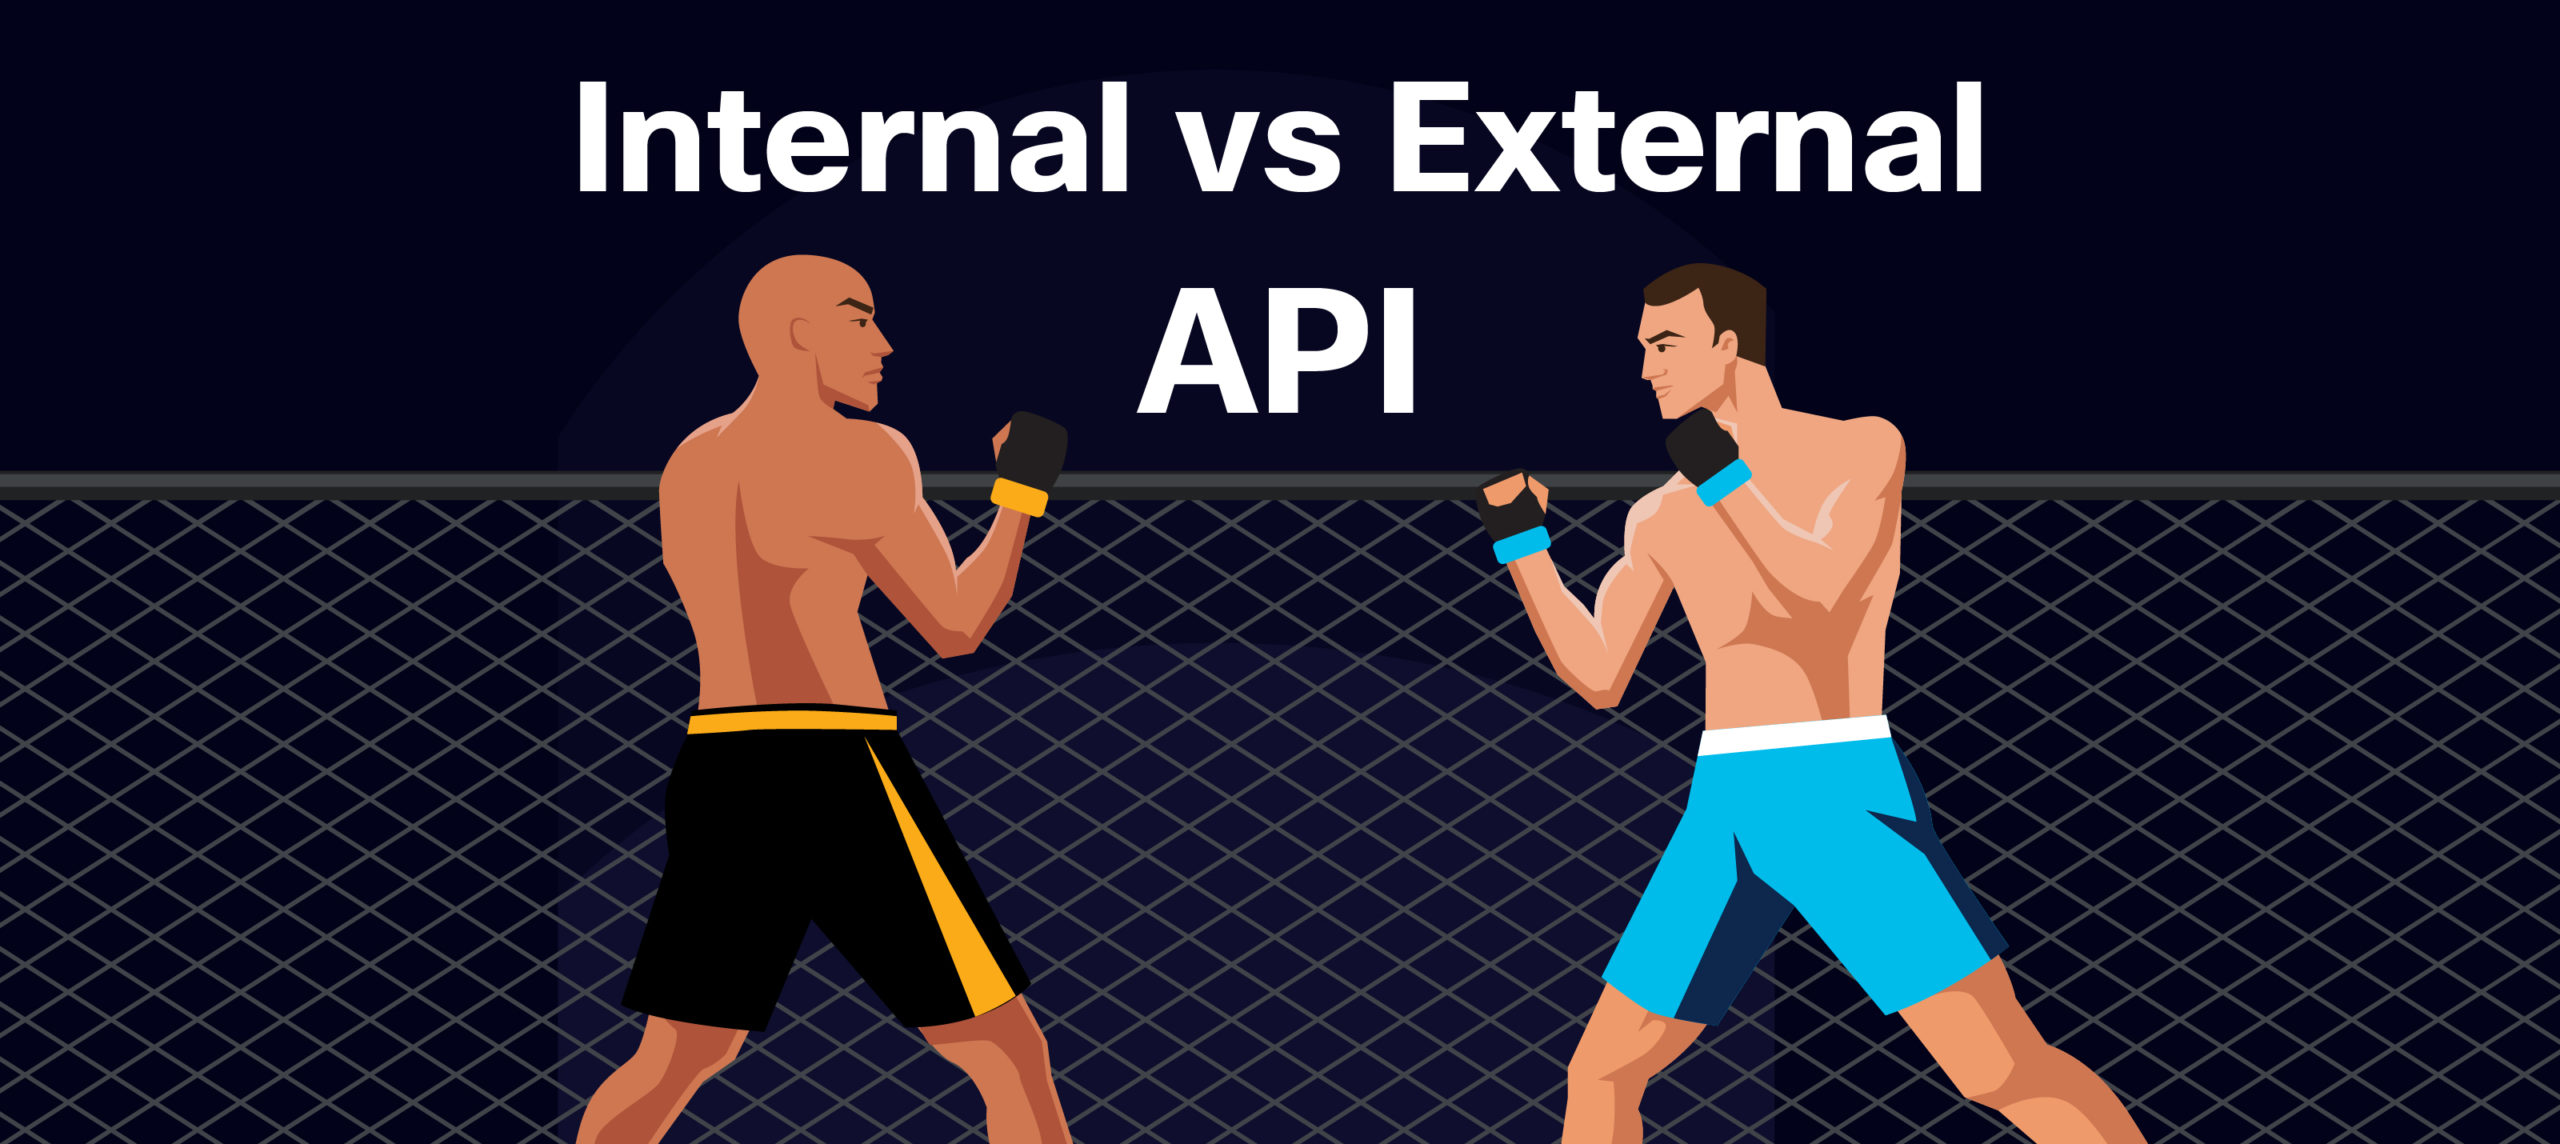 Panoptica_Internal vs. External API Security